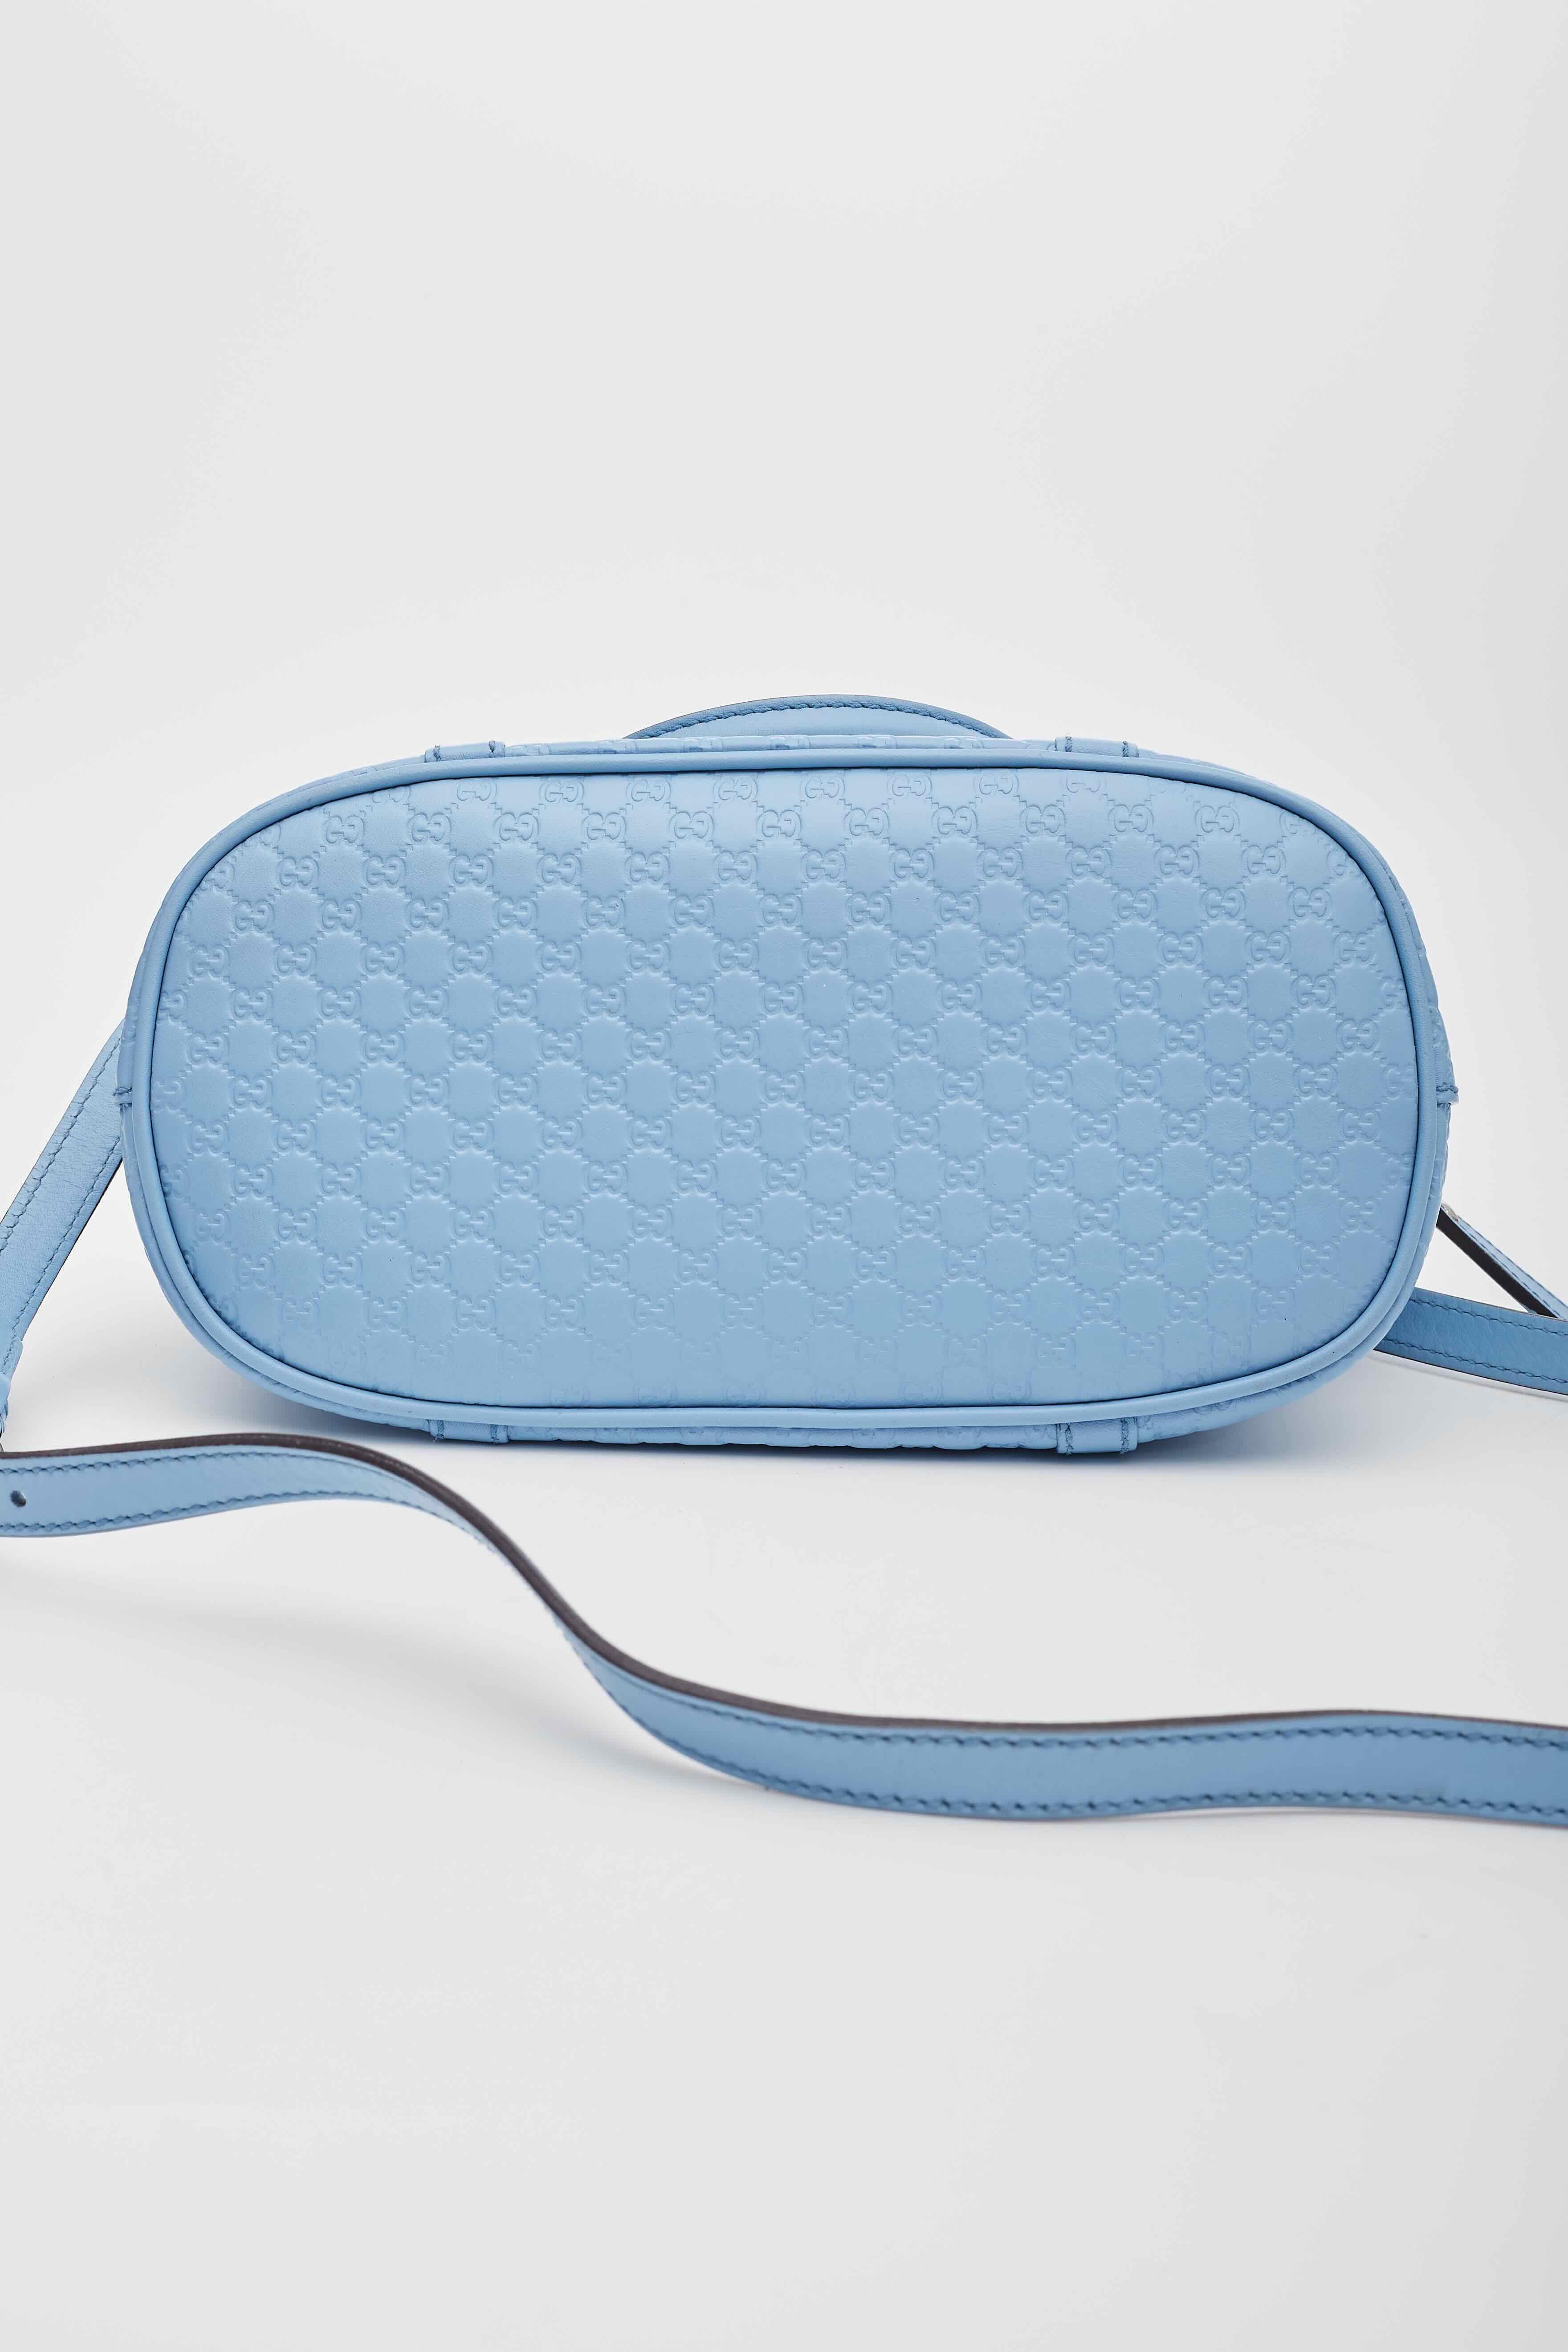 Gucci Baby Blue Microissima Mini Dome Bag For Sale 4